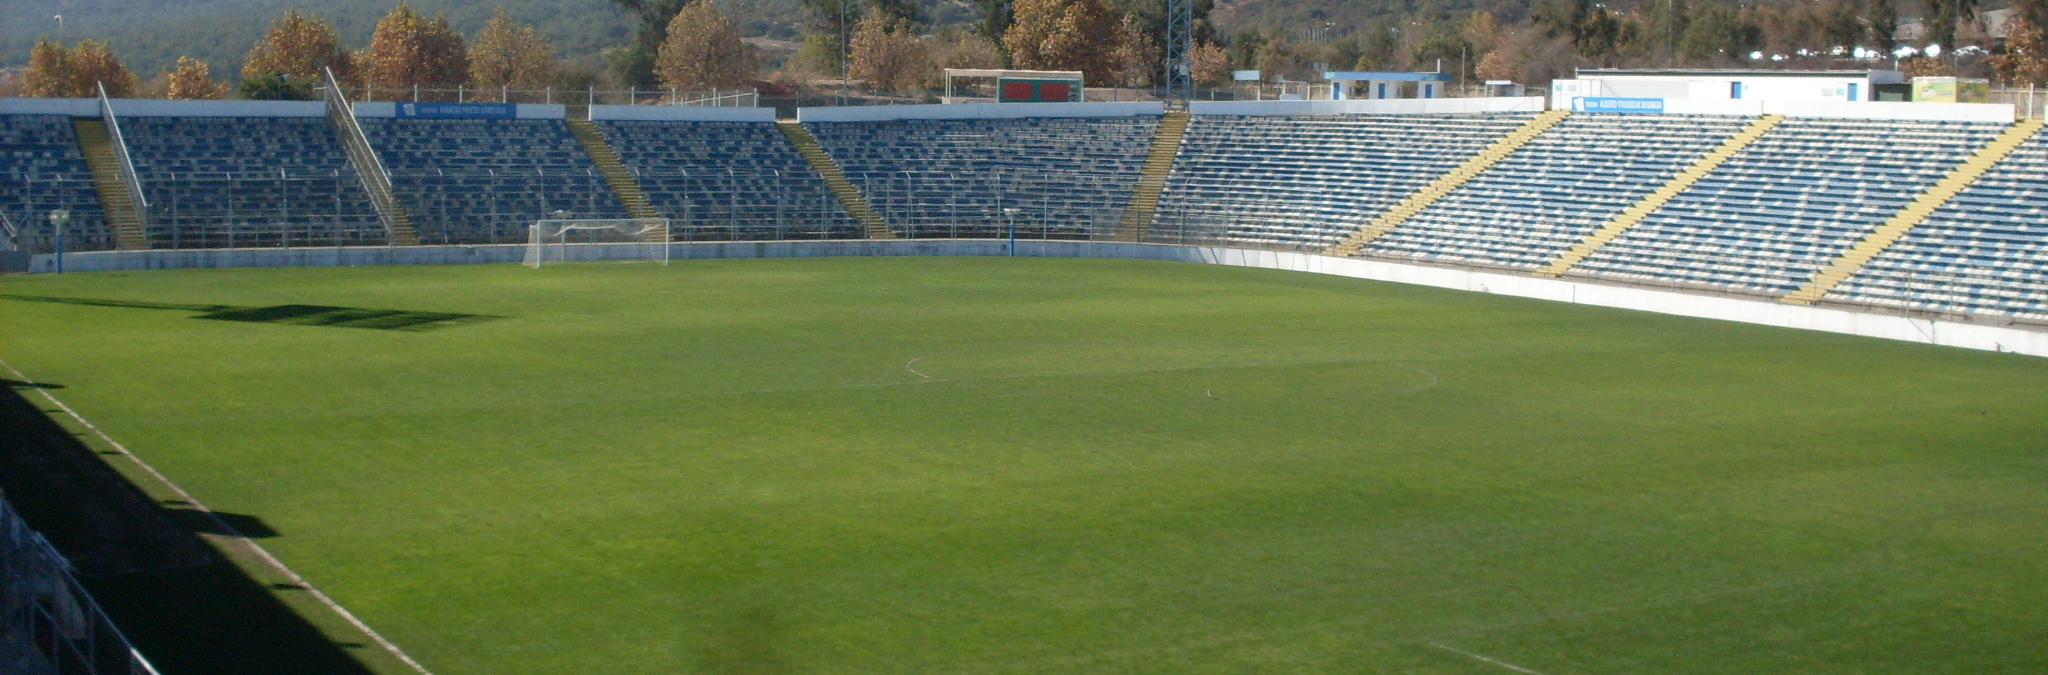 Estadio de los tetracampeones del campeonato chileno - PDCL